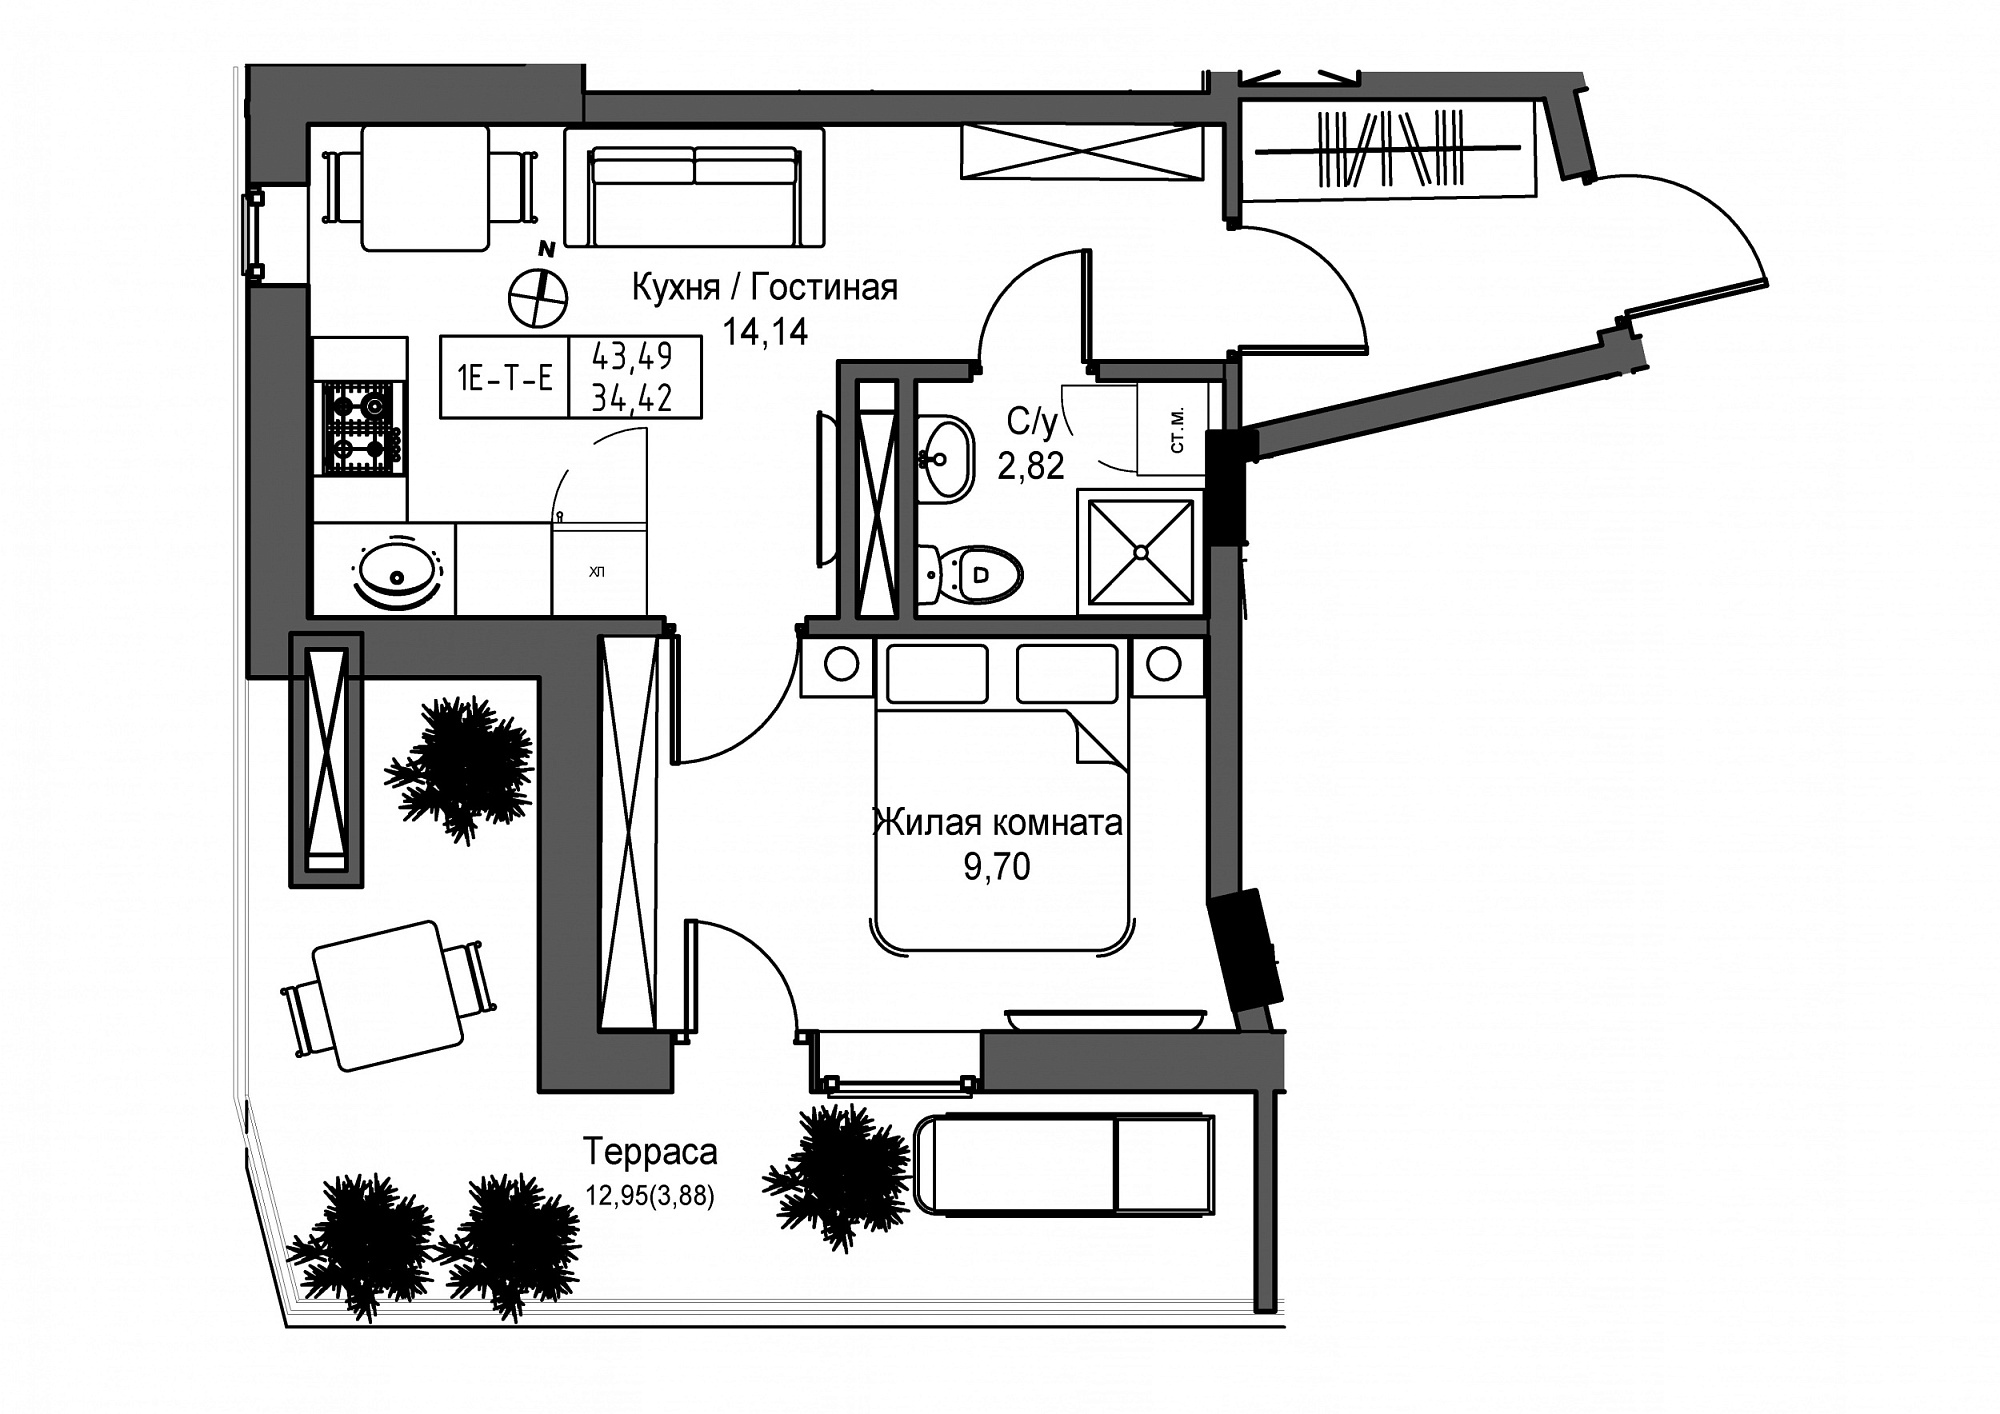 Планировка 1-к квартира площей 34.42м2, UM-004-09/0014.